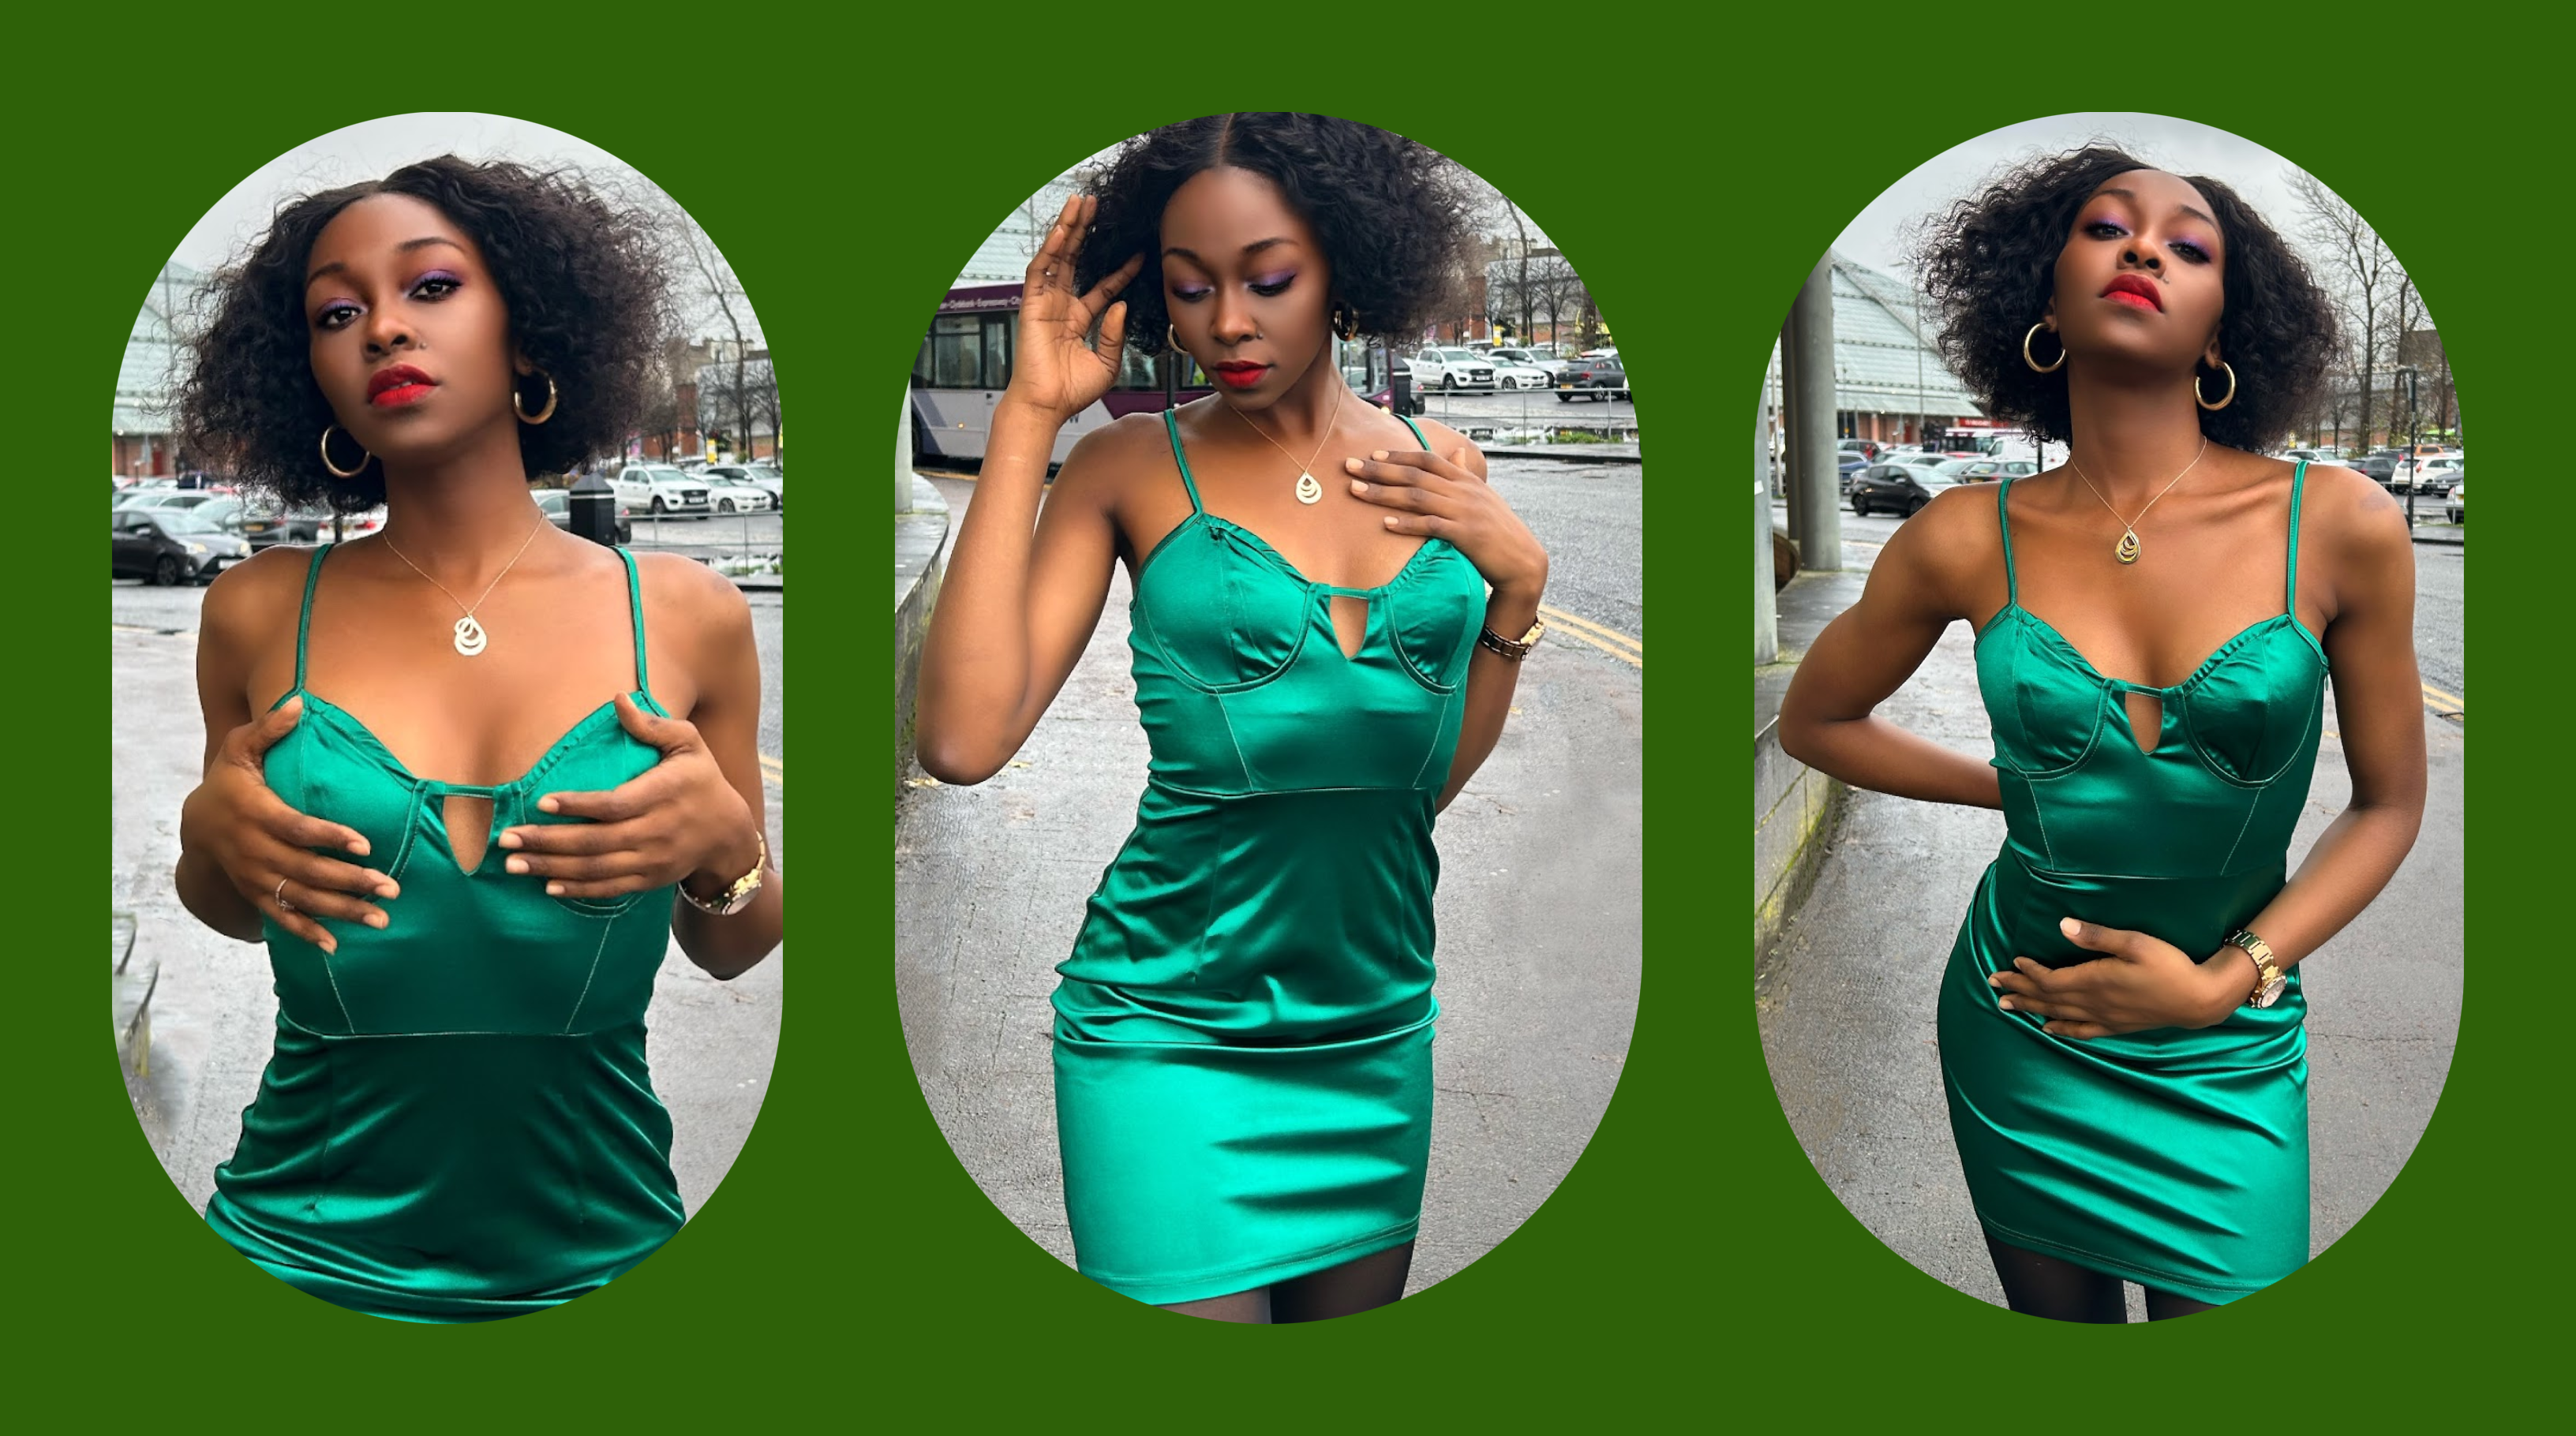 Femme luxe green satin dress